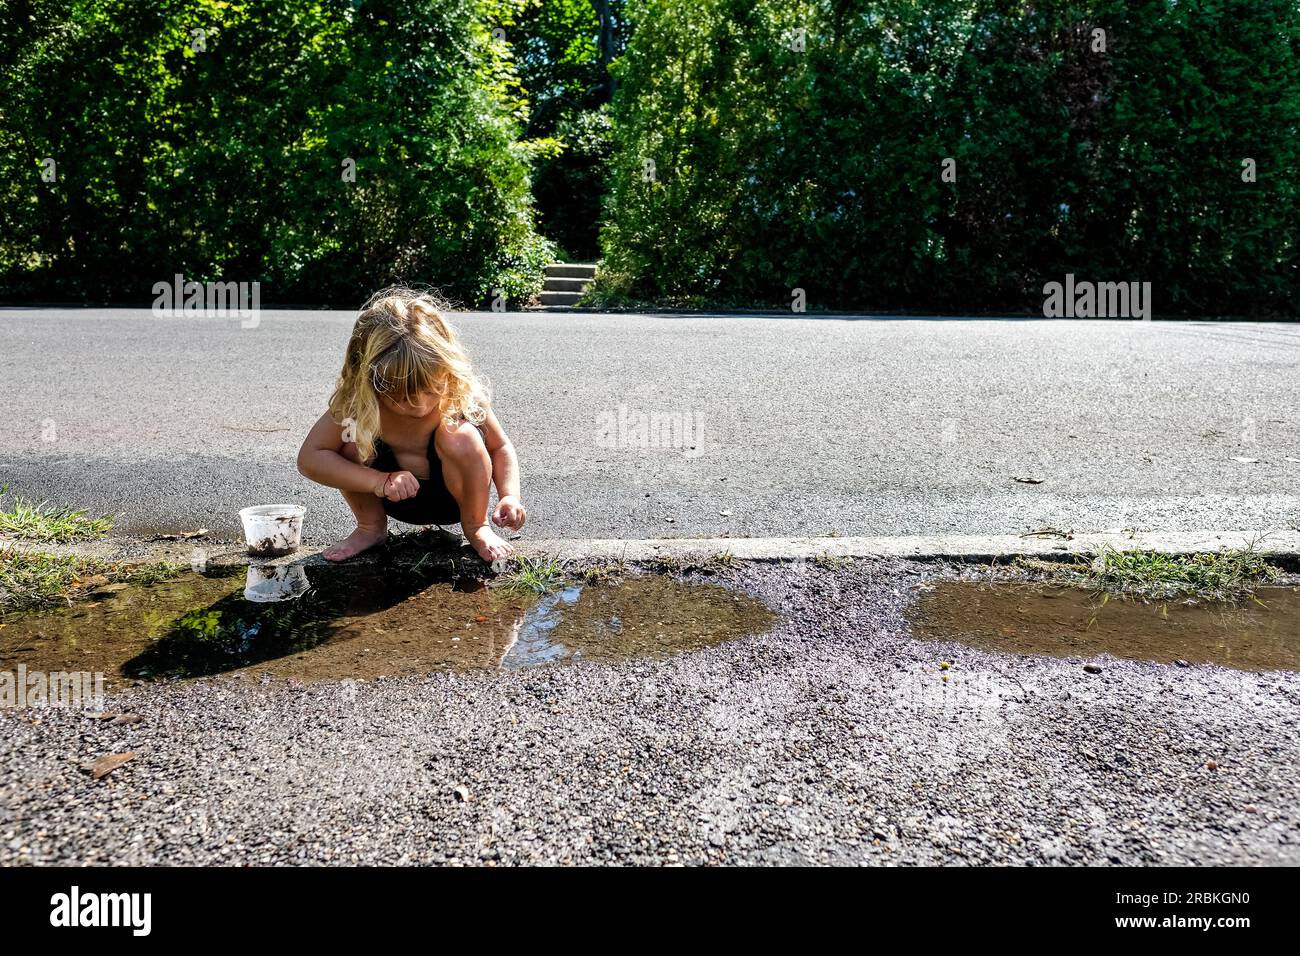 fille jouant dehors pieds nus dans des flaques sur le trottoir Banque D'Images